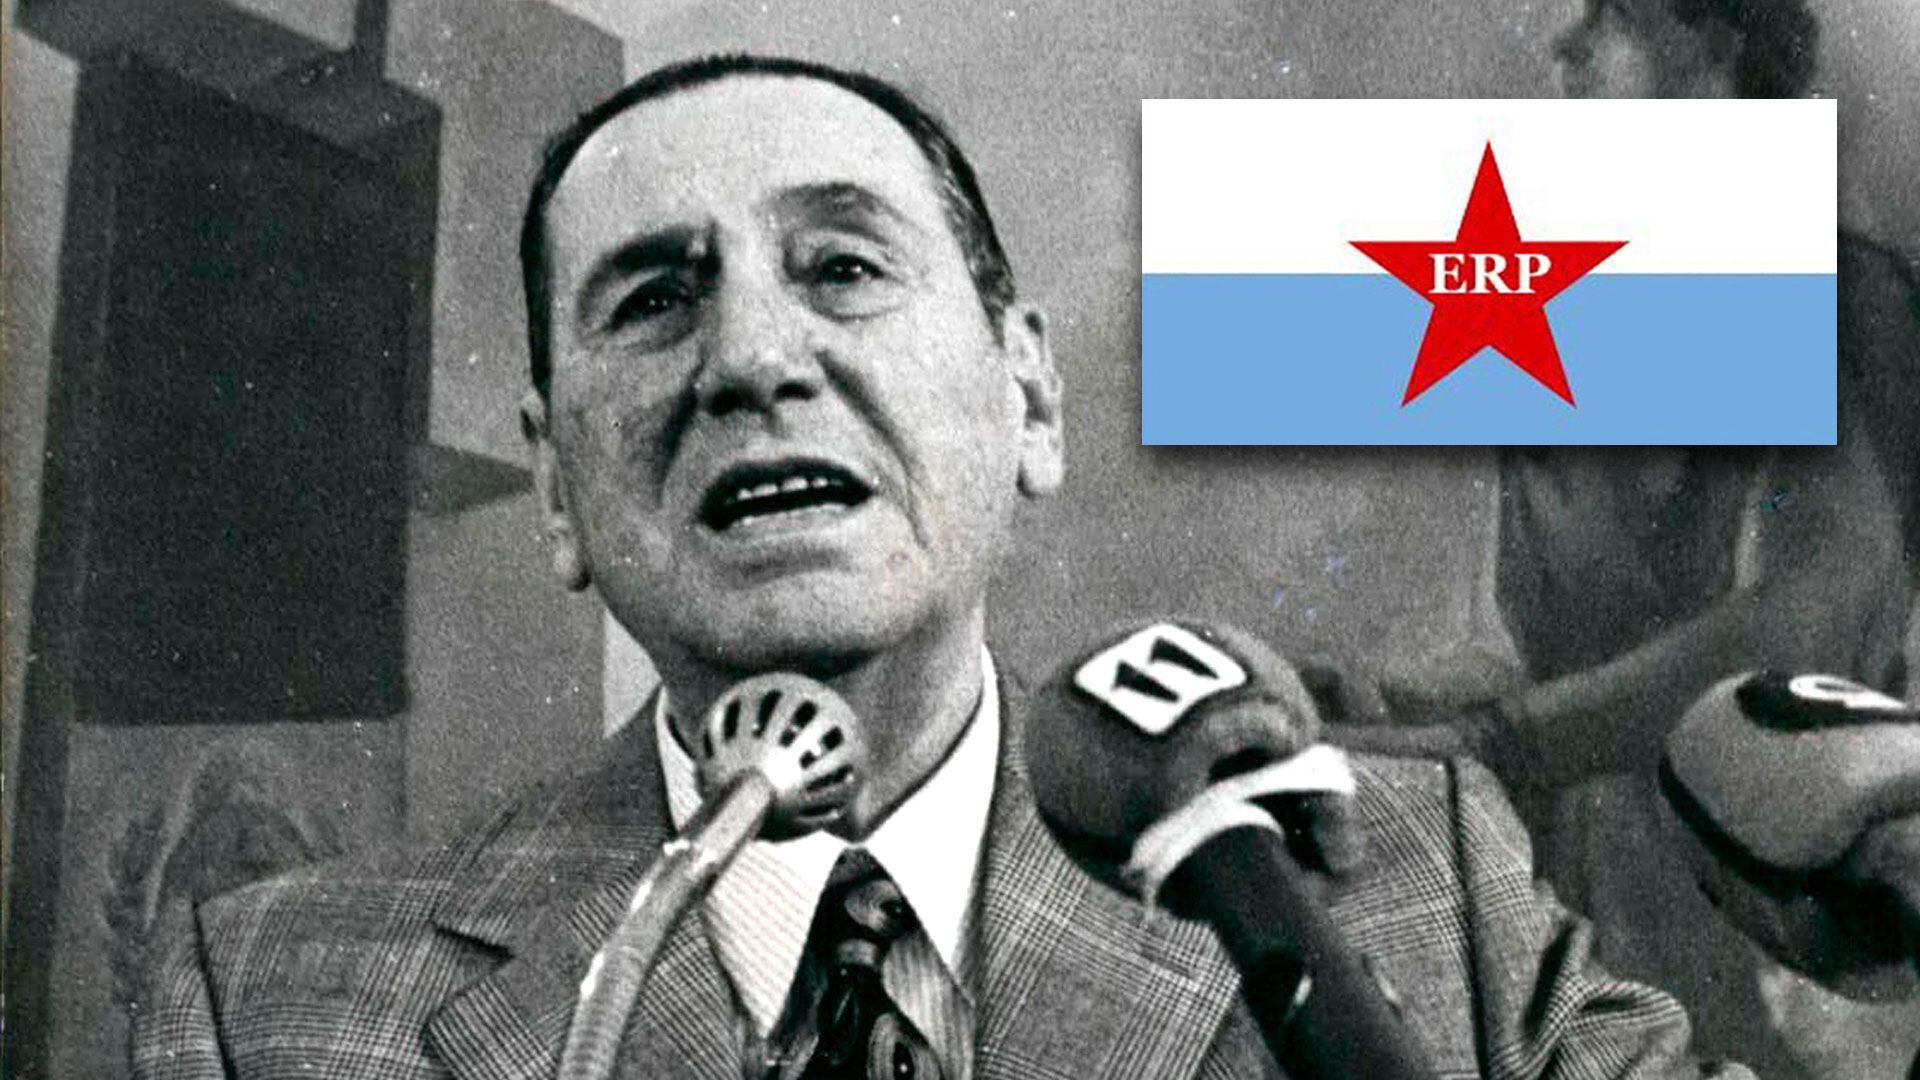 ERP vs. Perón